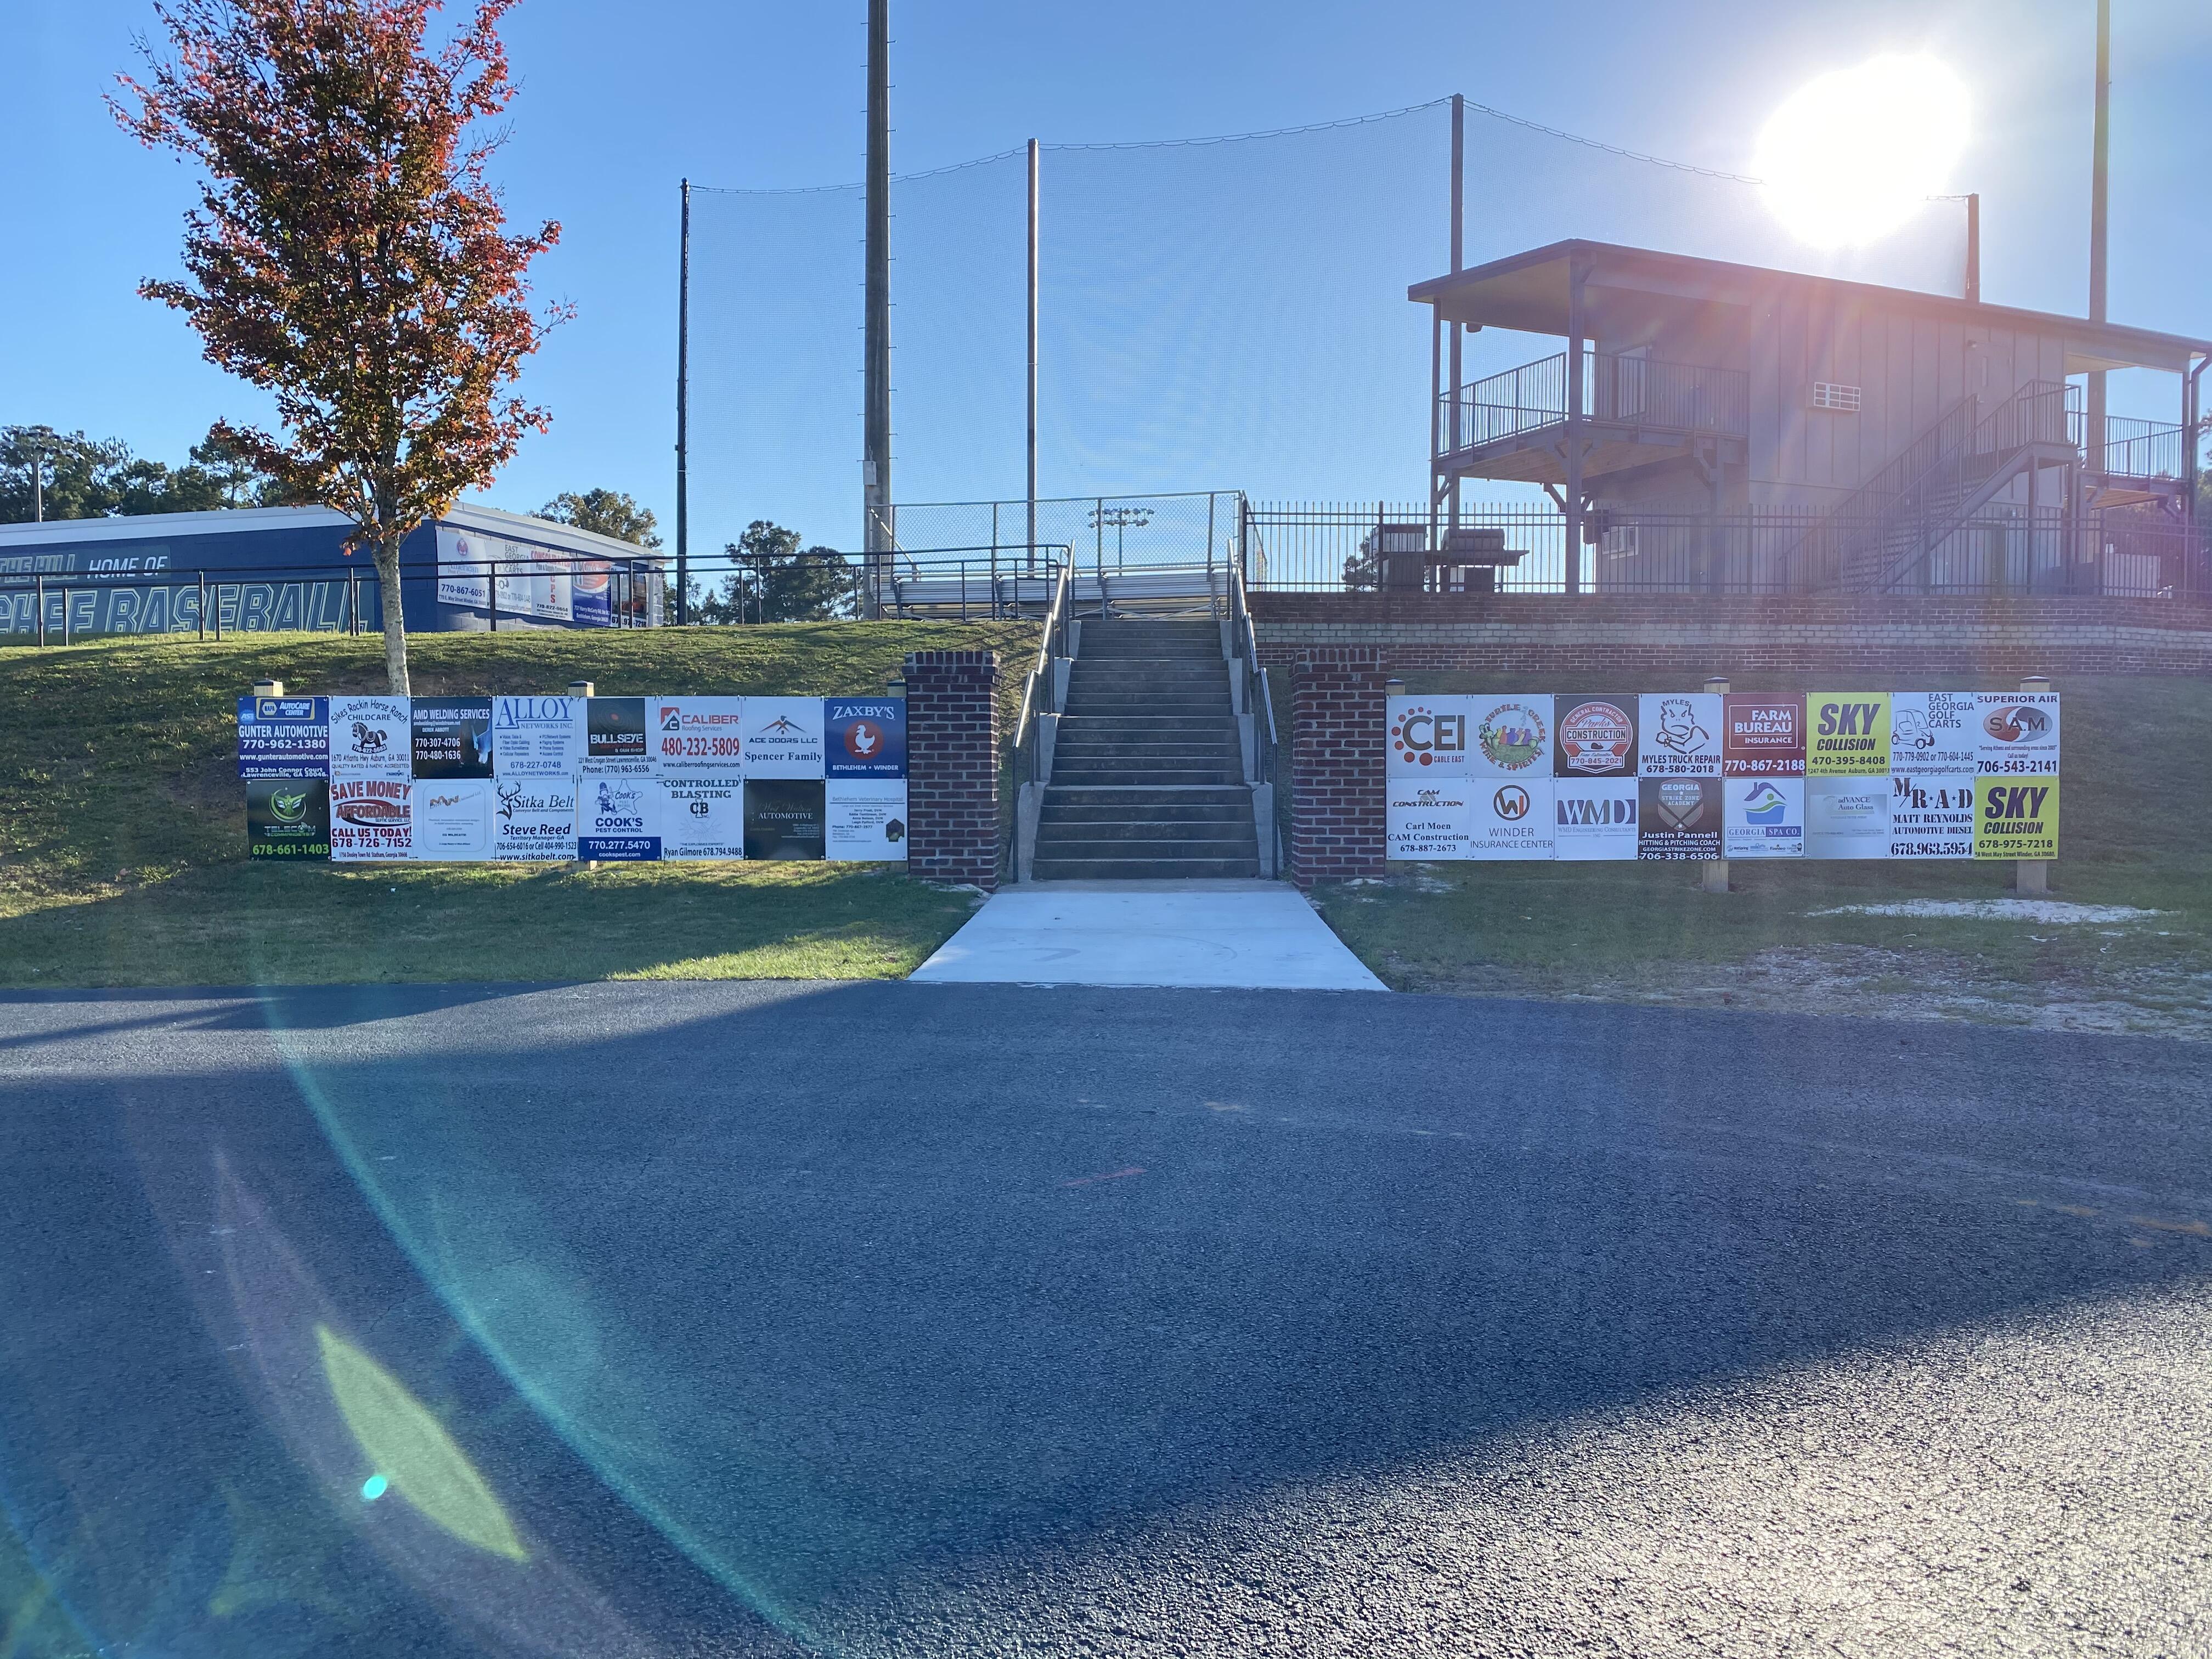 Baseball field entrance